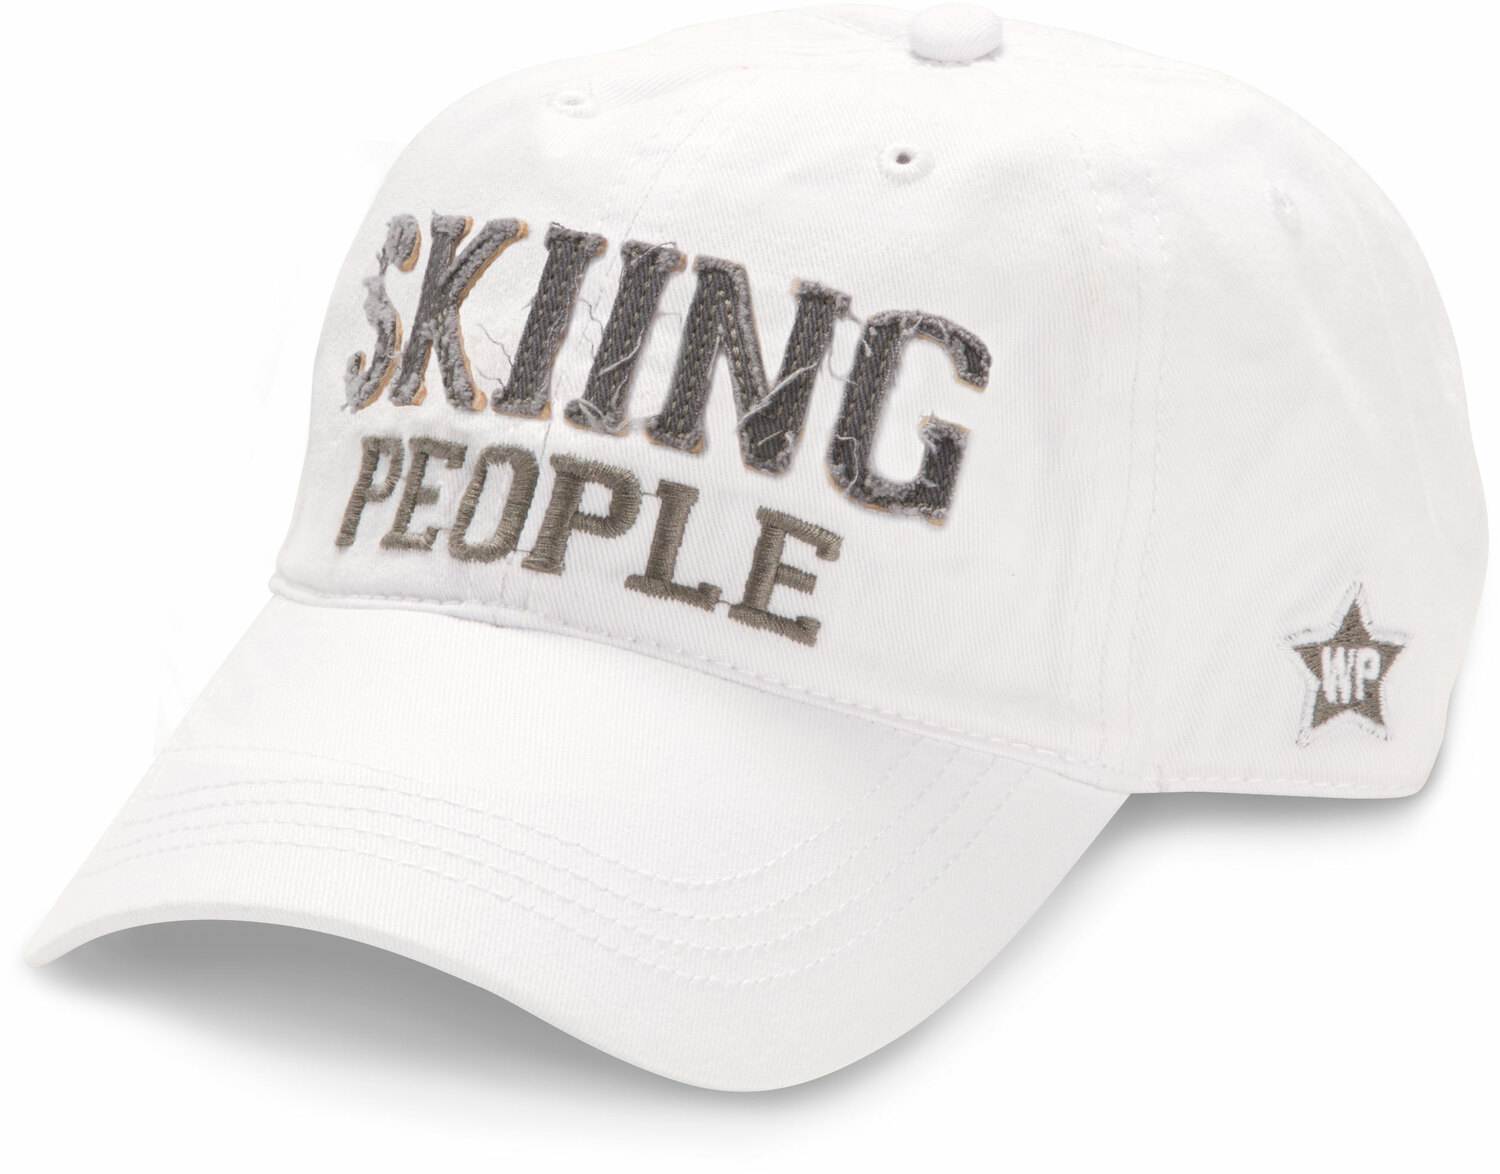 Skiing People by We People - Skiing People - White Adjustable Hat